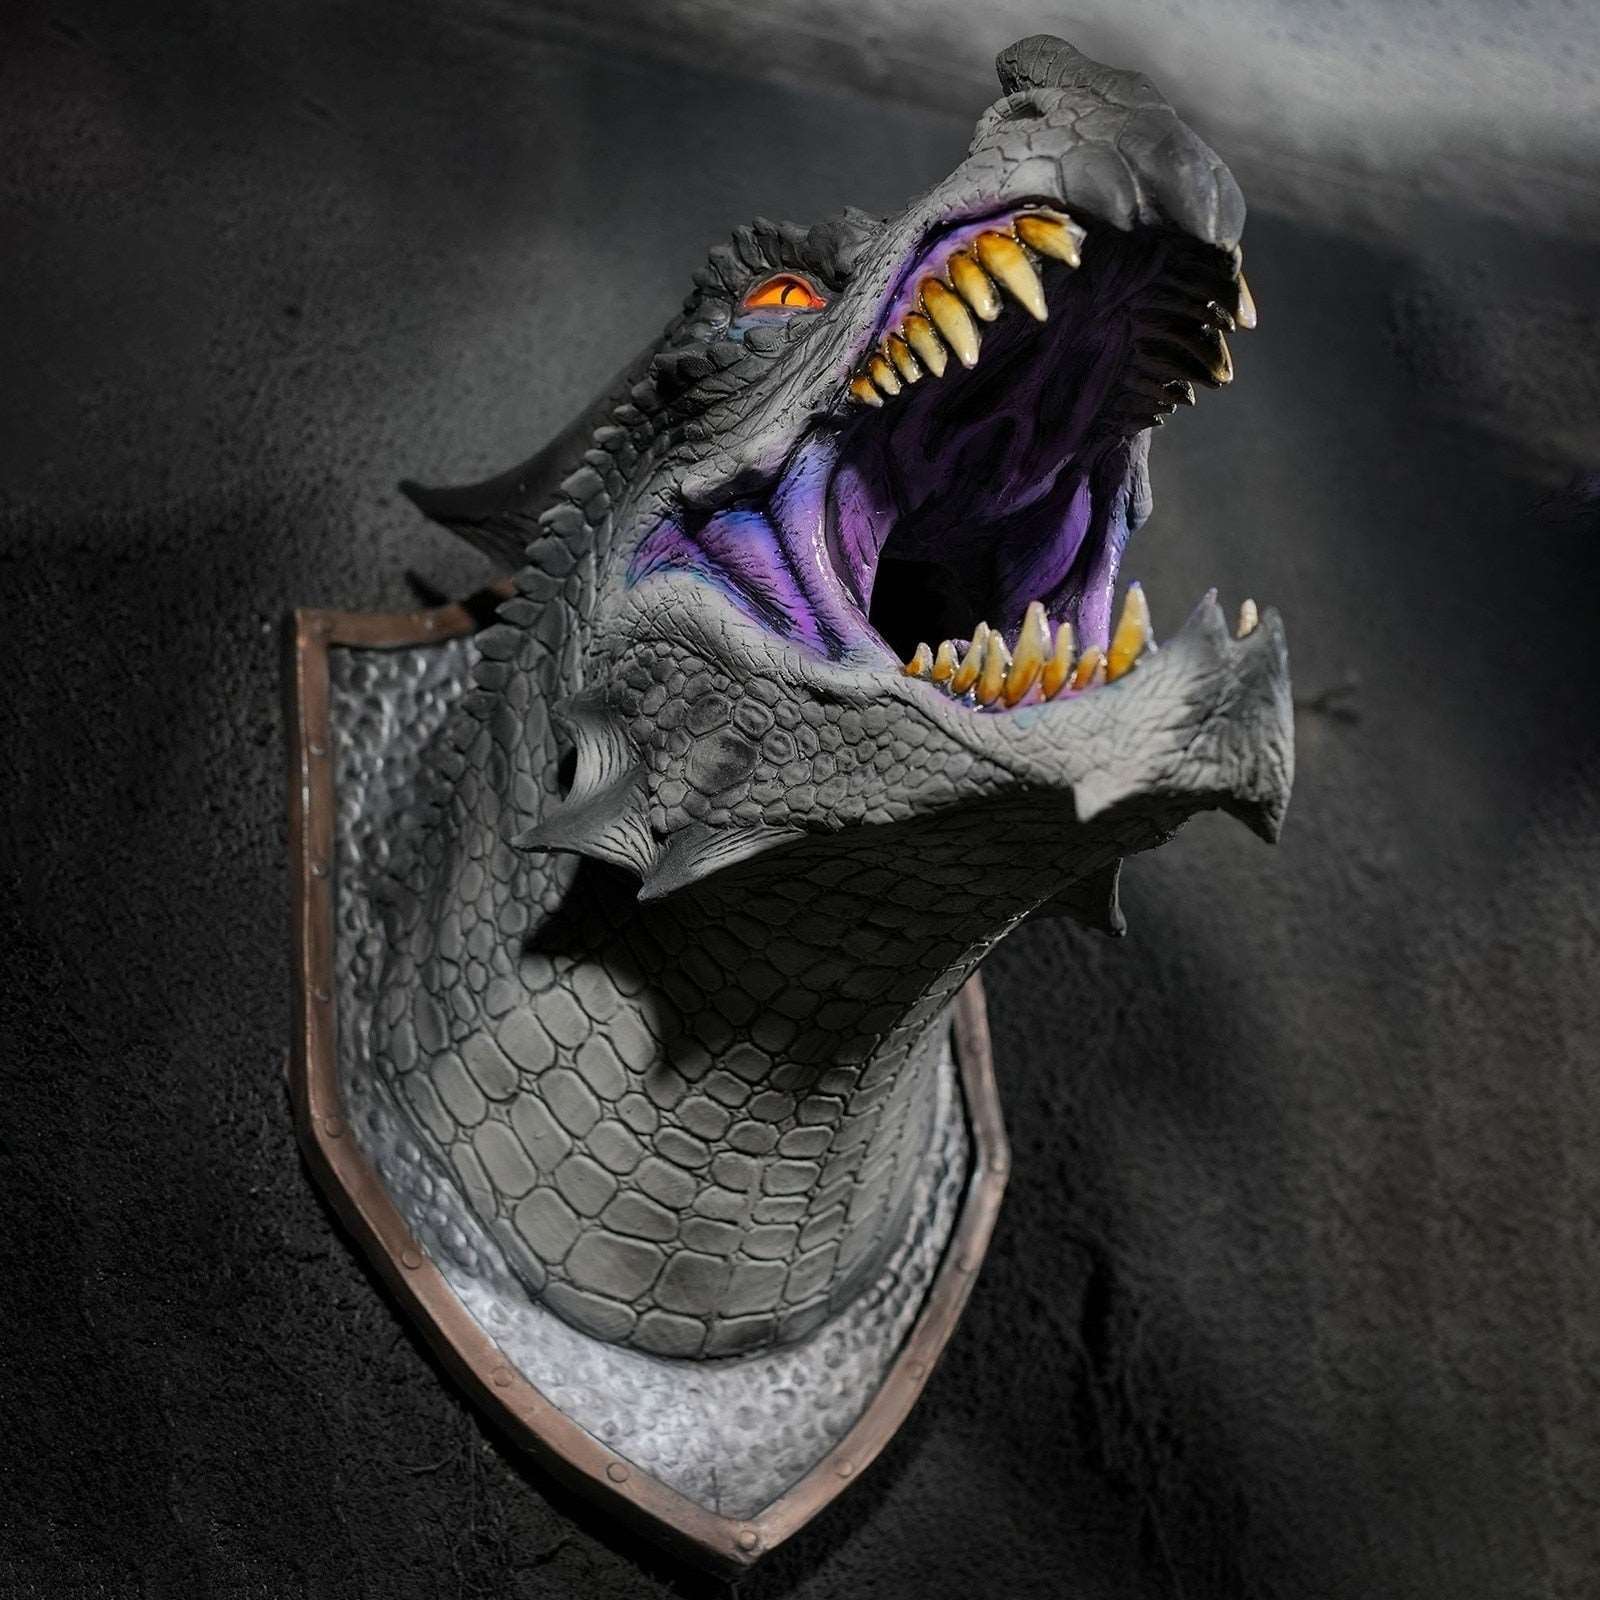 3D Wall Mounted Dragon Head Prop - Dinosaur Smoke Light Wall Art - Sculpture/Statue - Home Decor Room